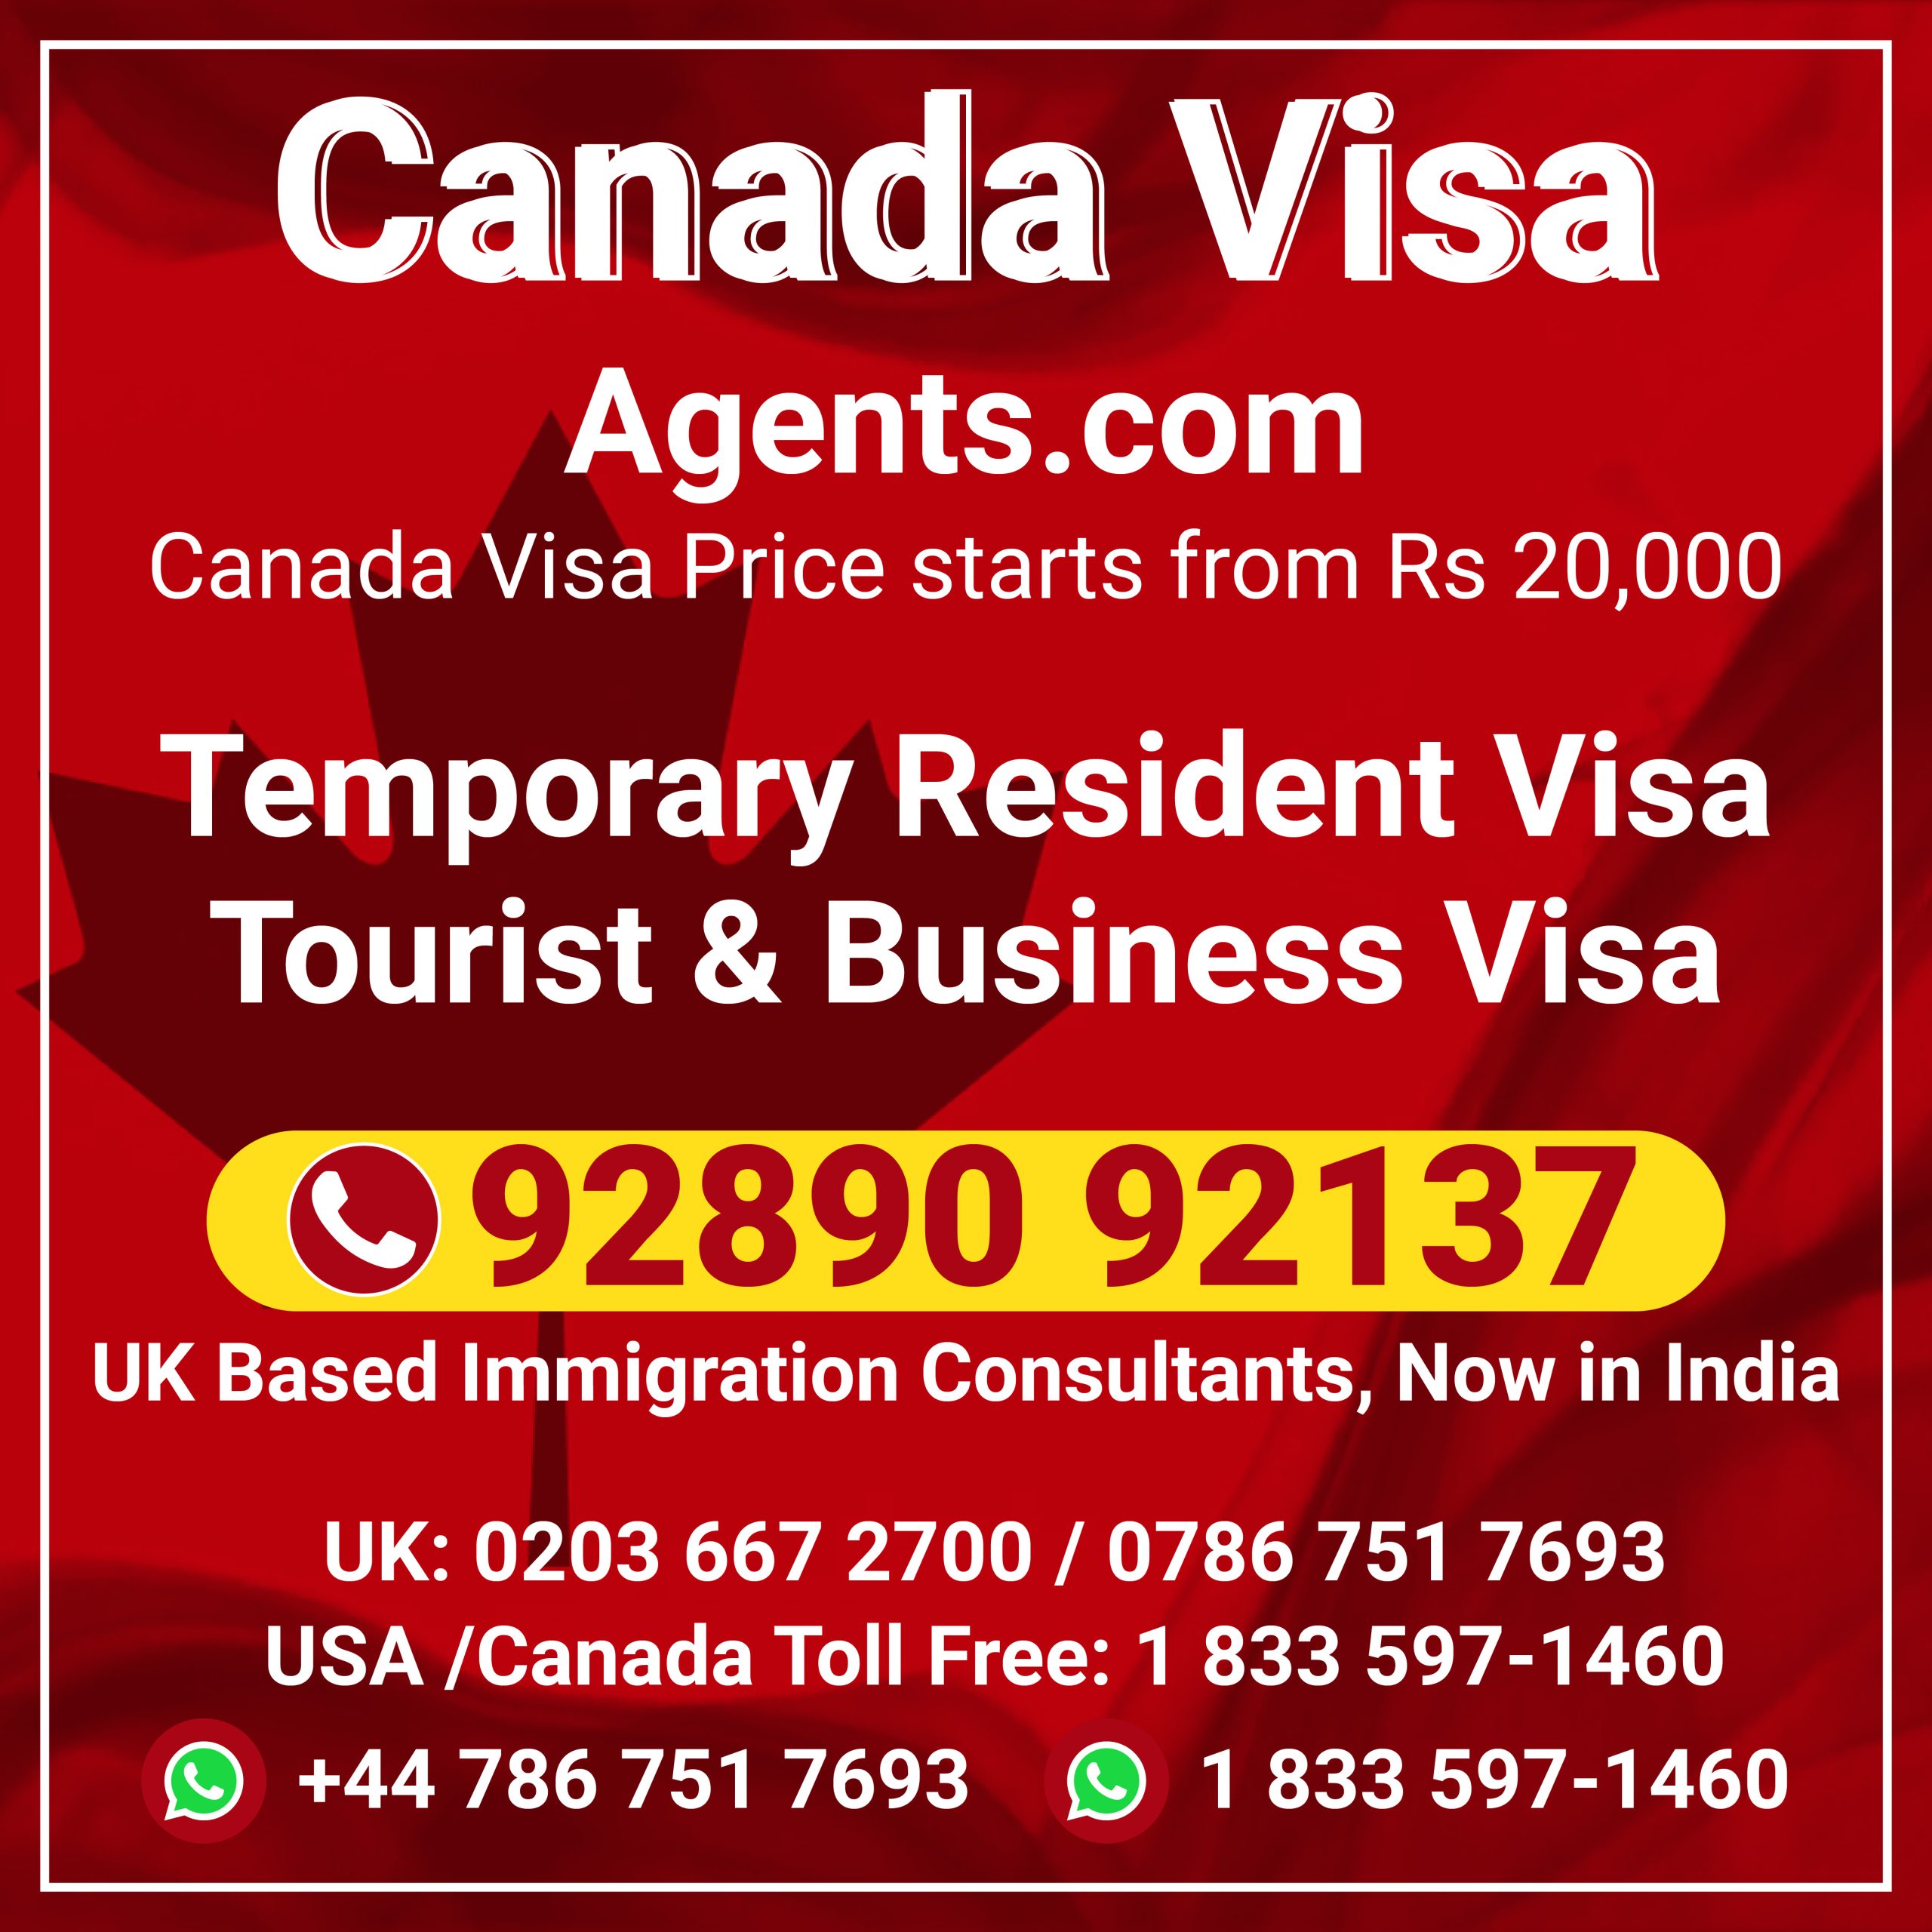 Canada visa agents India